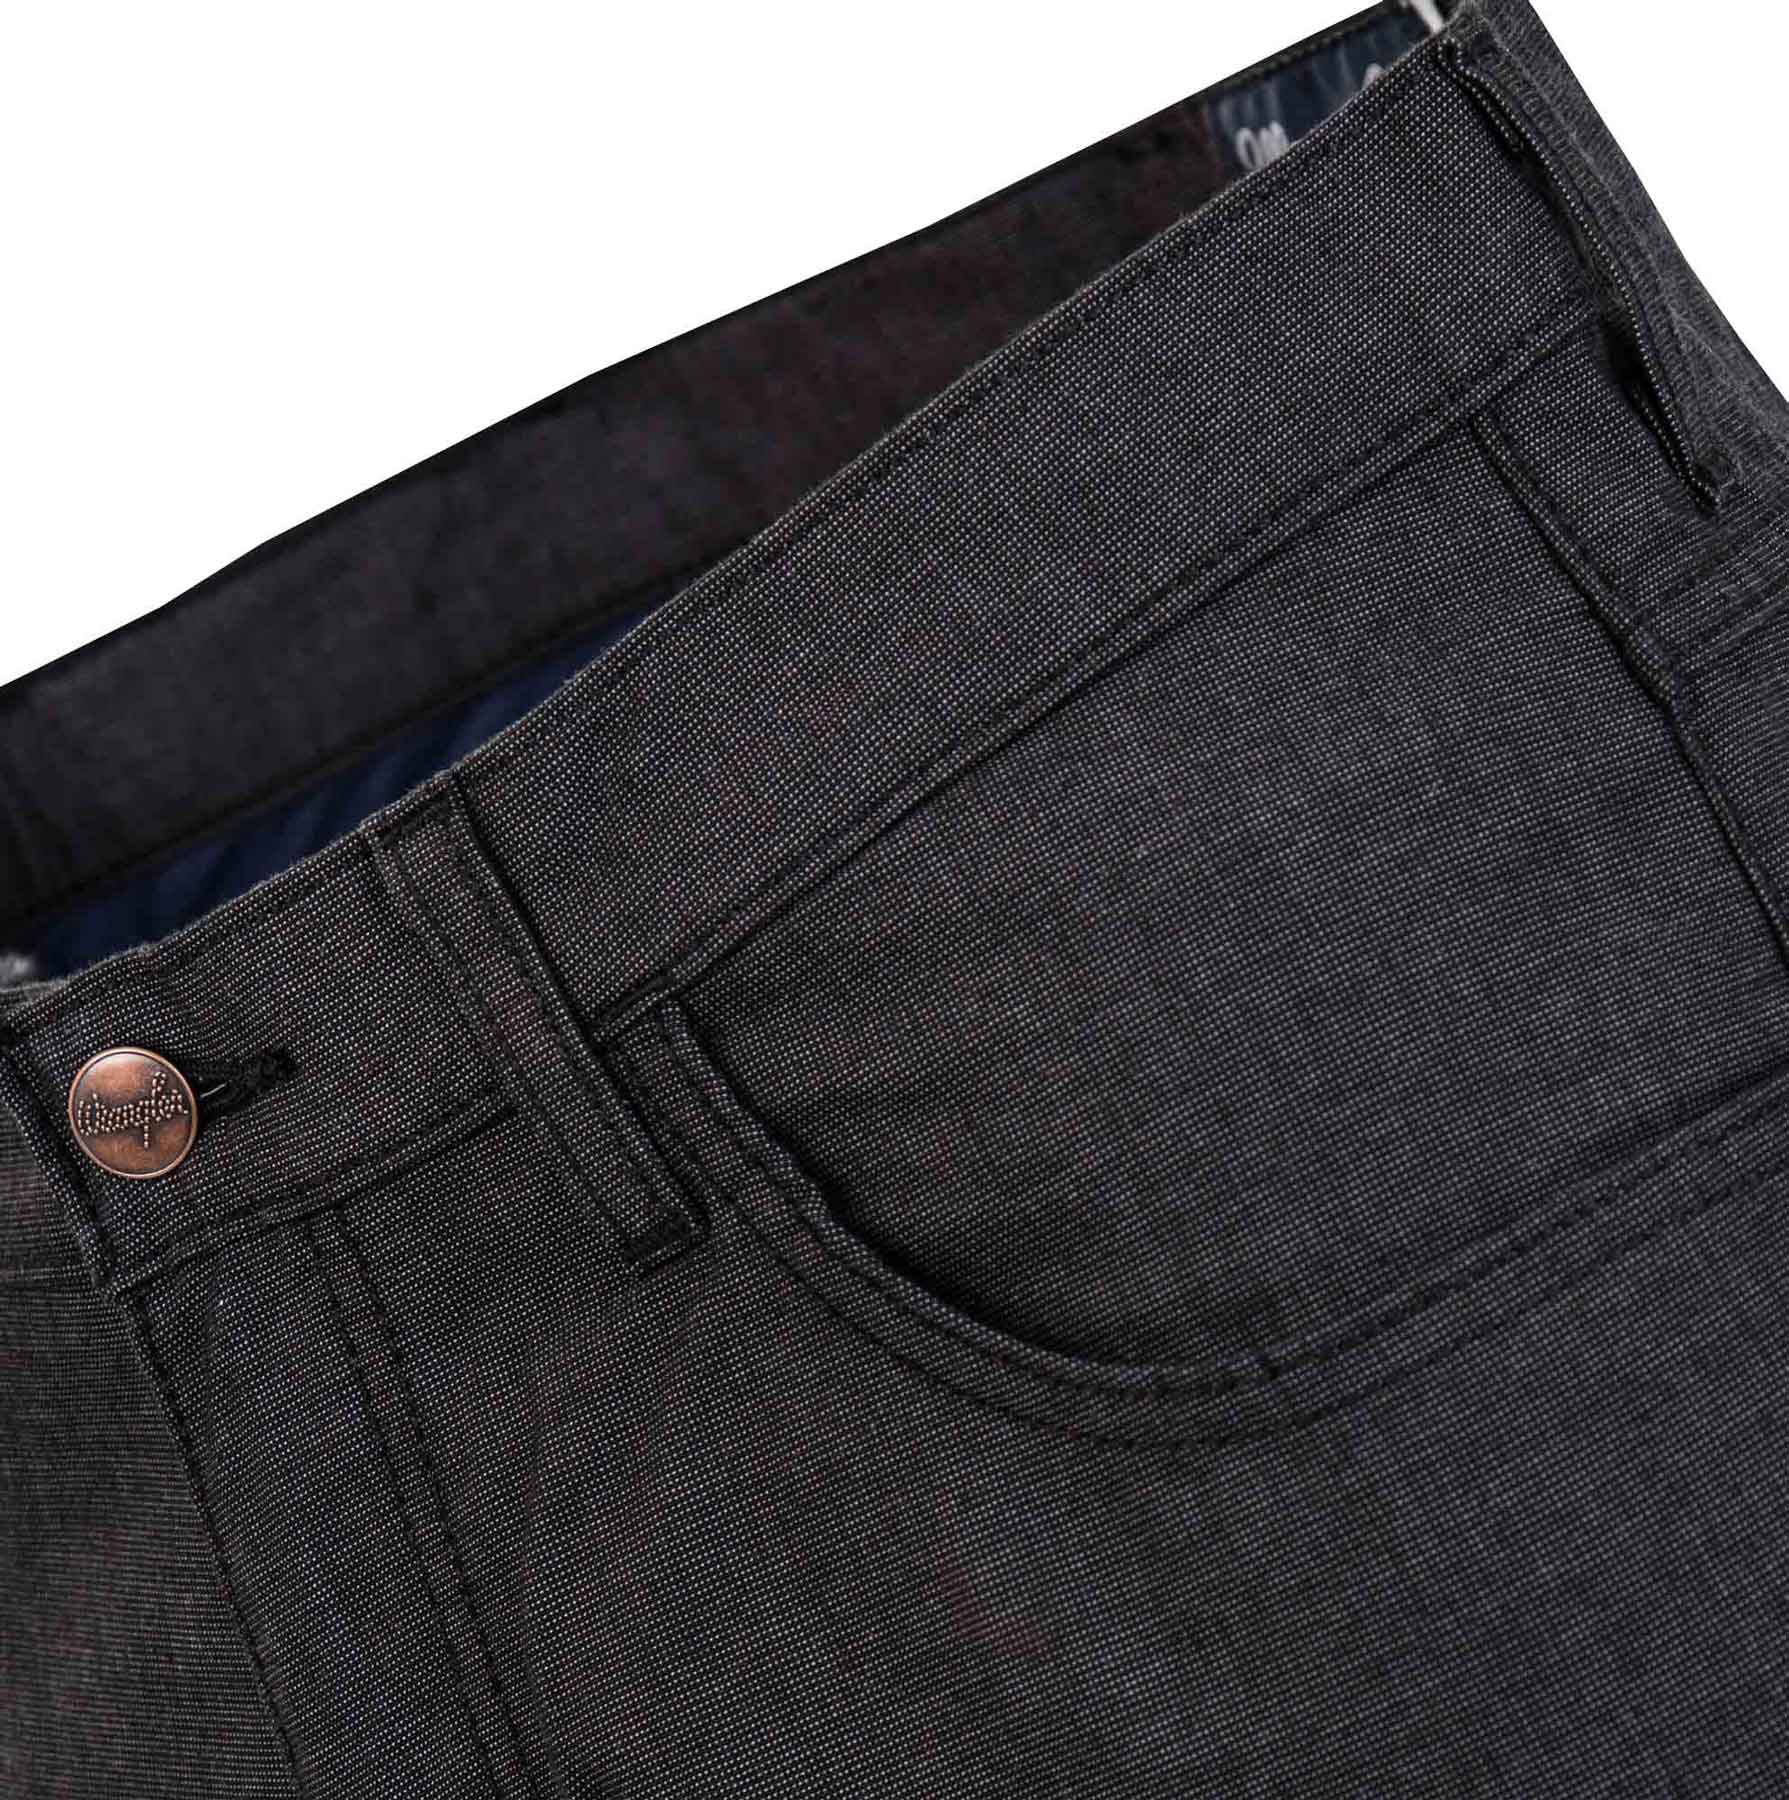 ARIZONA STRETCH BLACK - Pánské kalhoty